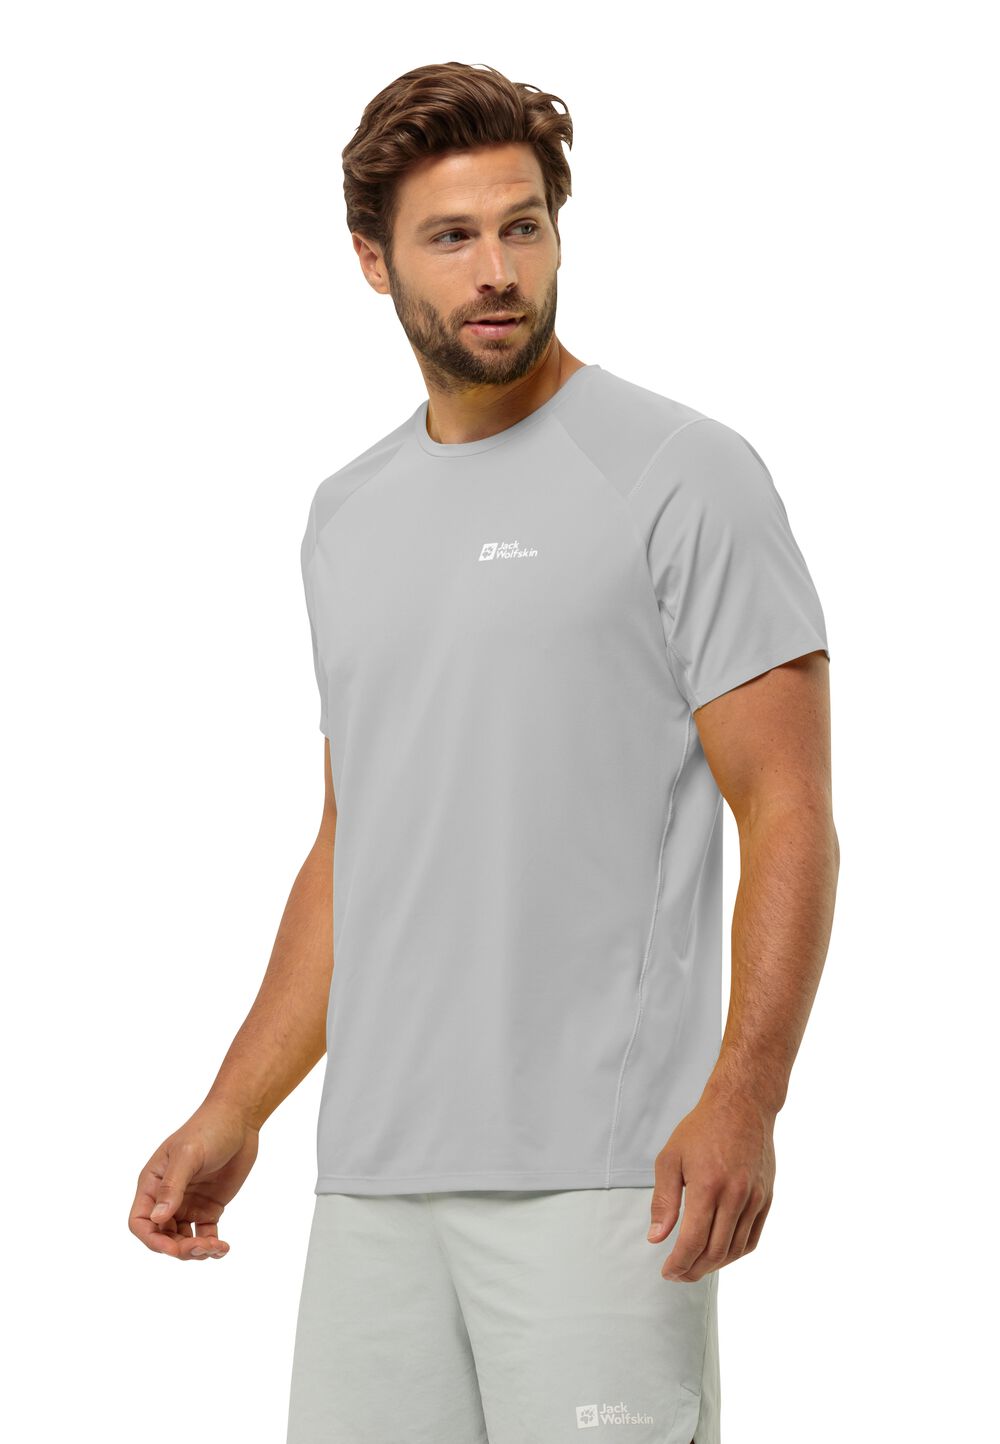 Jack Wolfskin Prelight Chill T-Shirt Men Functioneel shirt Heren L grijs cool grey